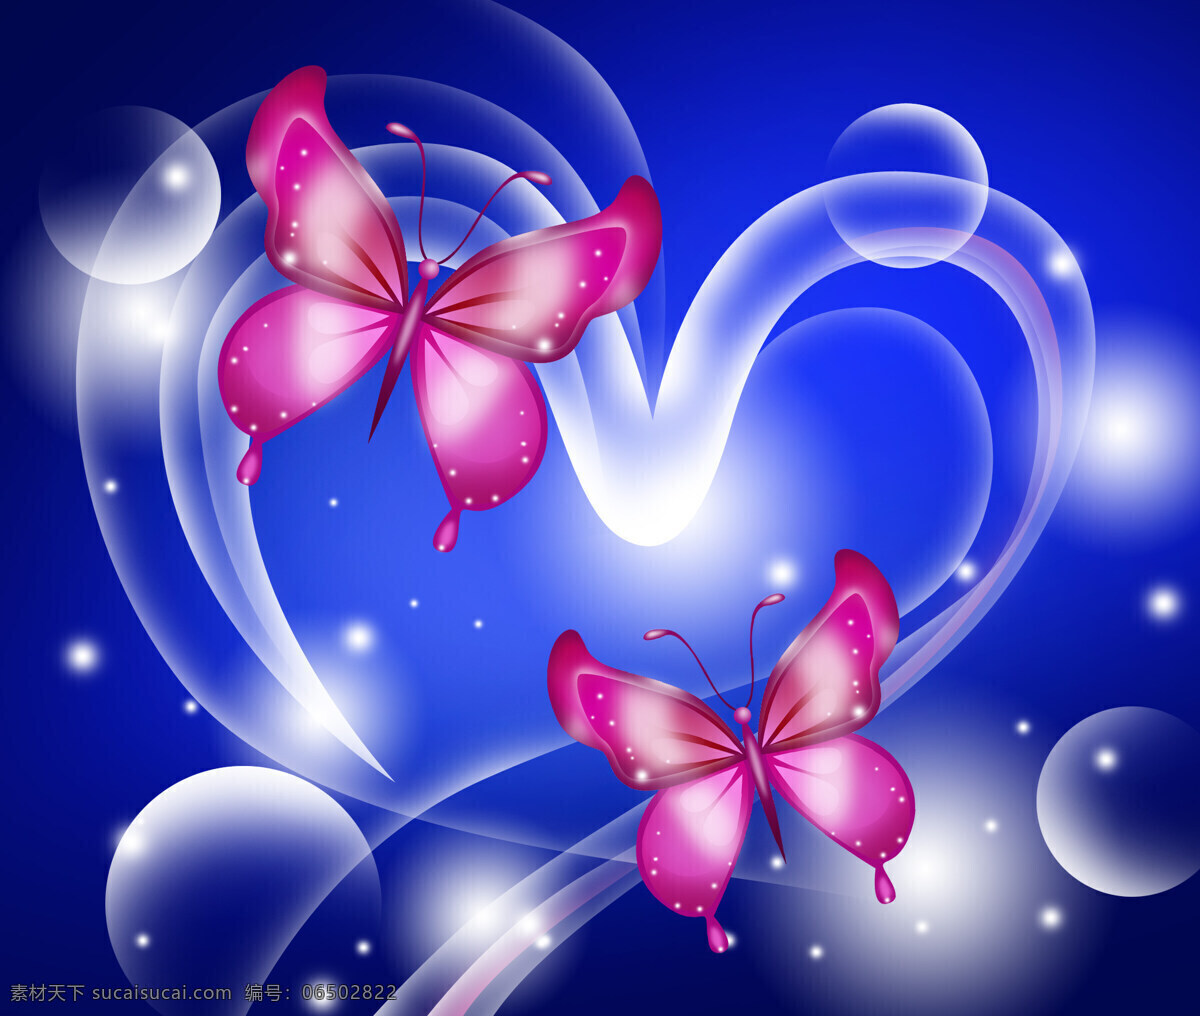 蓝色背景蝴蝶 蝴蝶 爱心 水泡与蝴蝶 气泡蝴蝶 红色的蝴蝶 艺术图 生物世界 昆虫